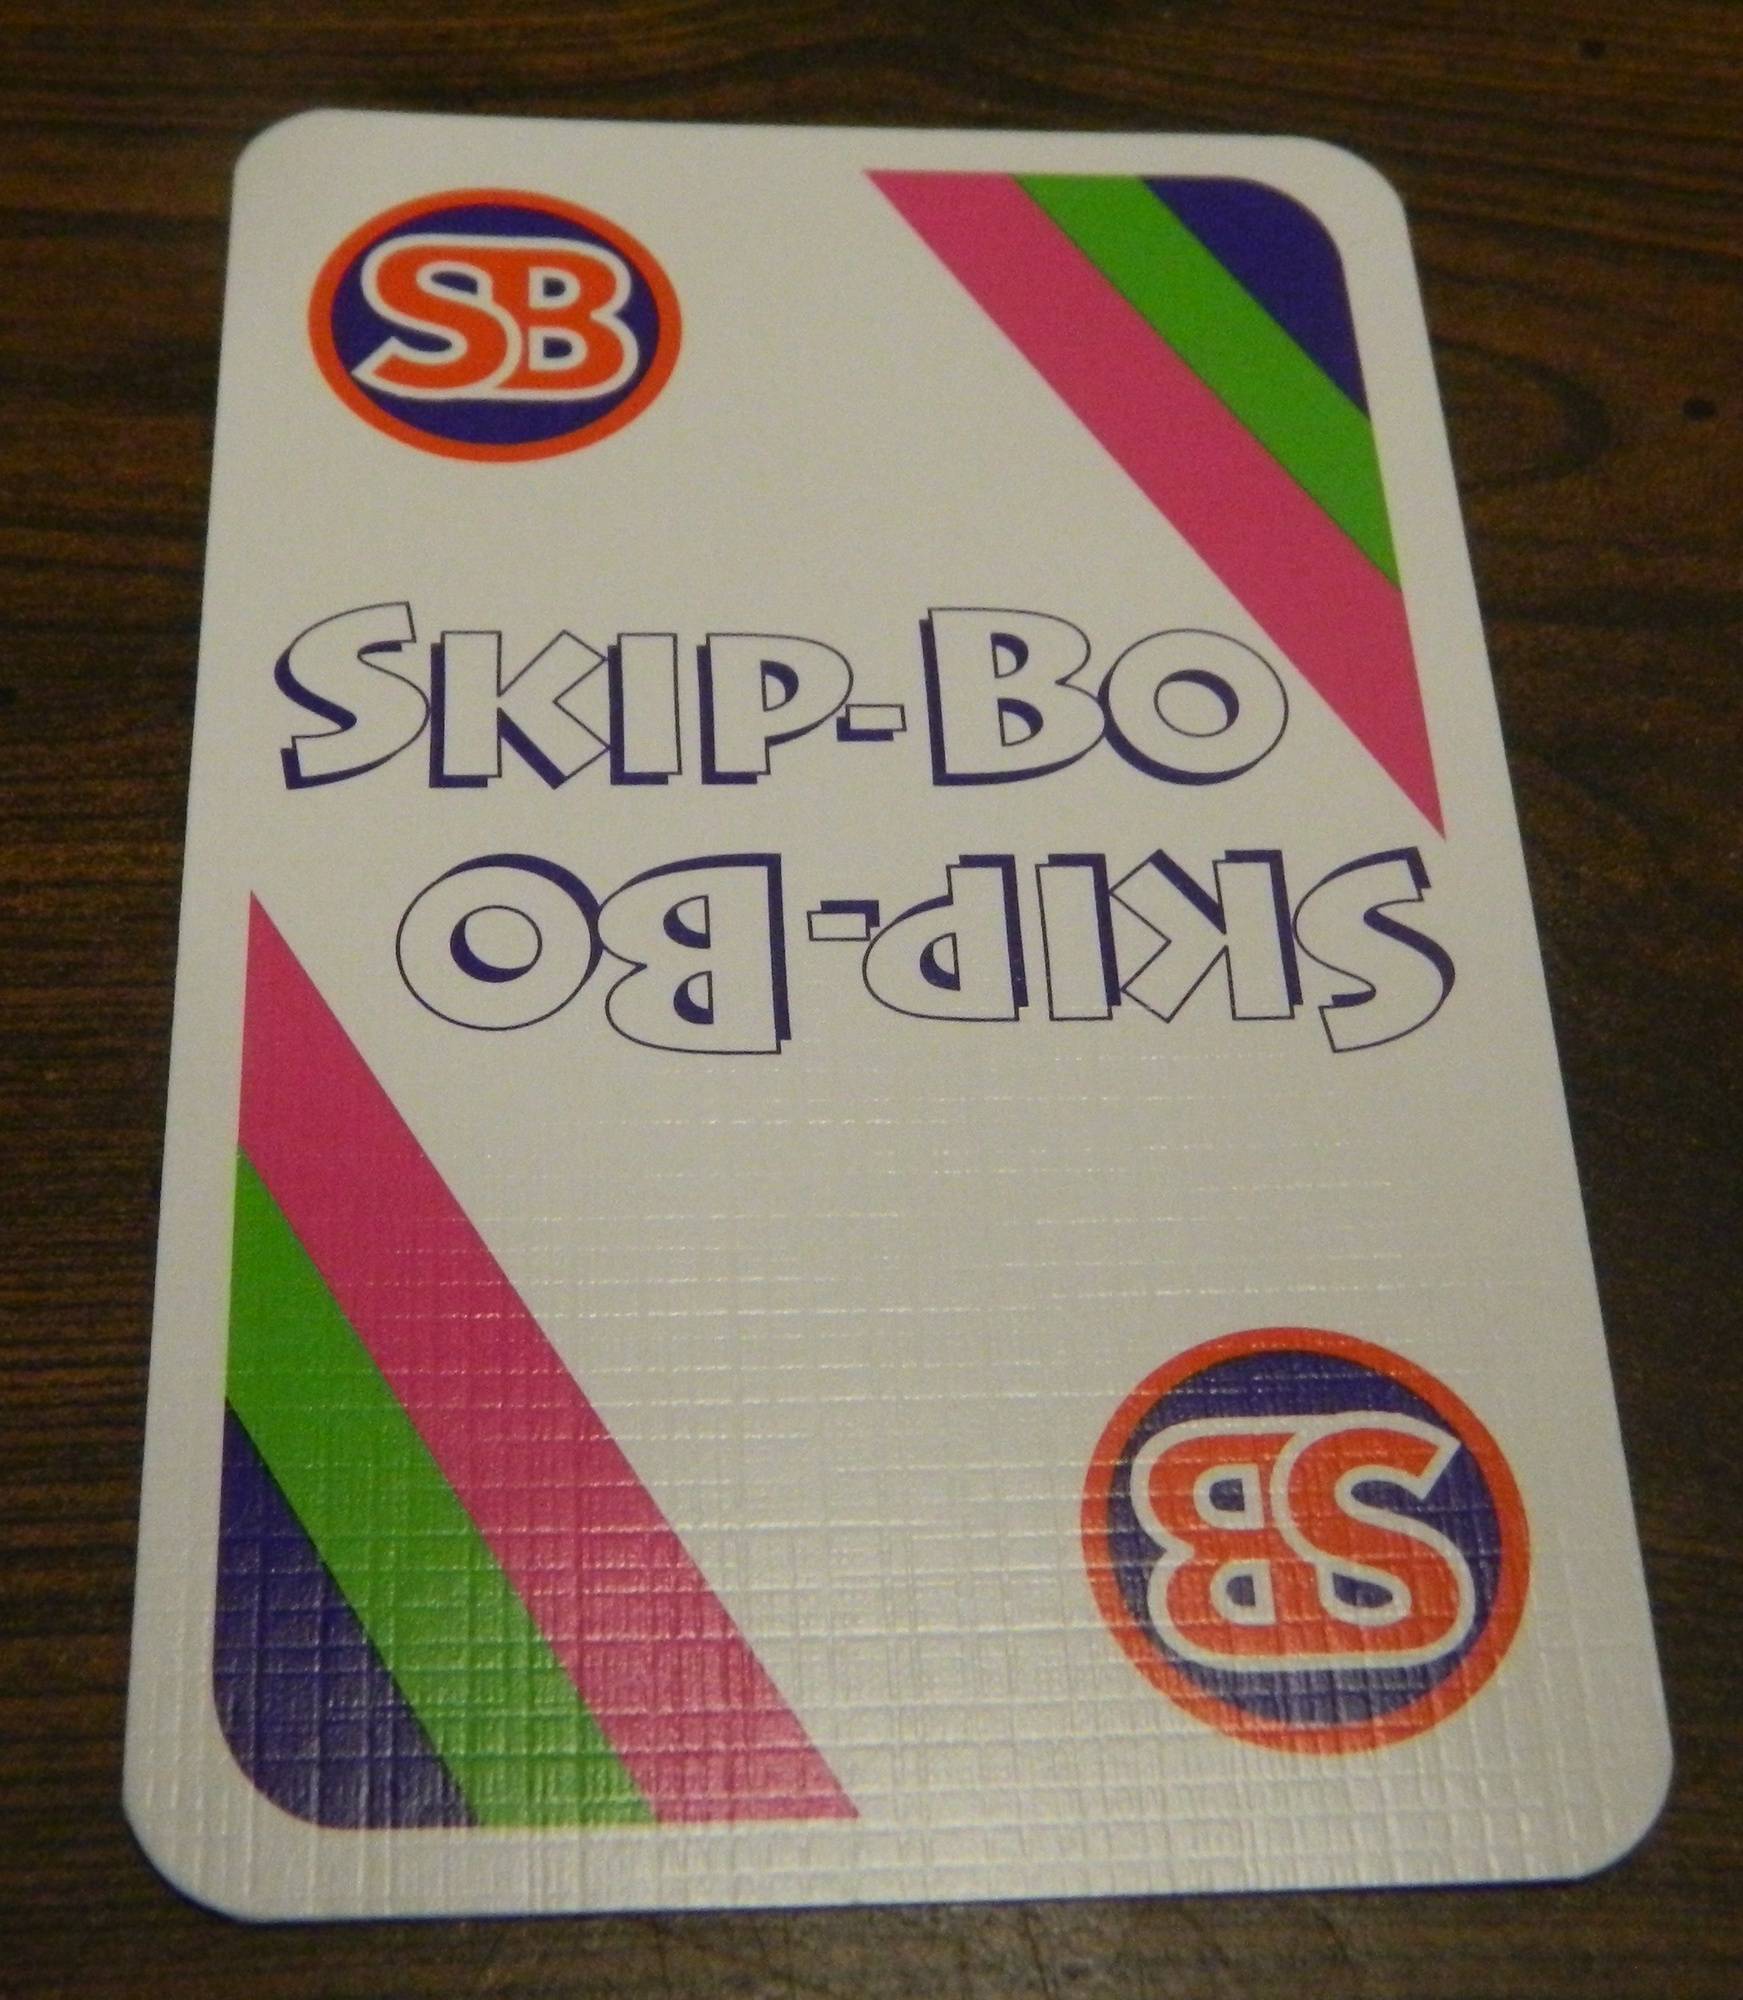 Skip-Bo Card Game 